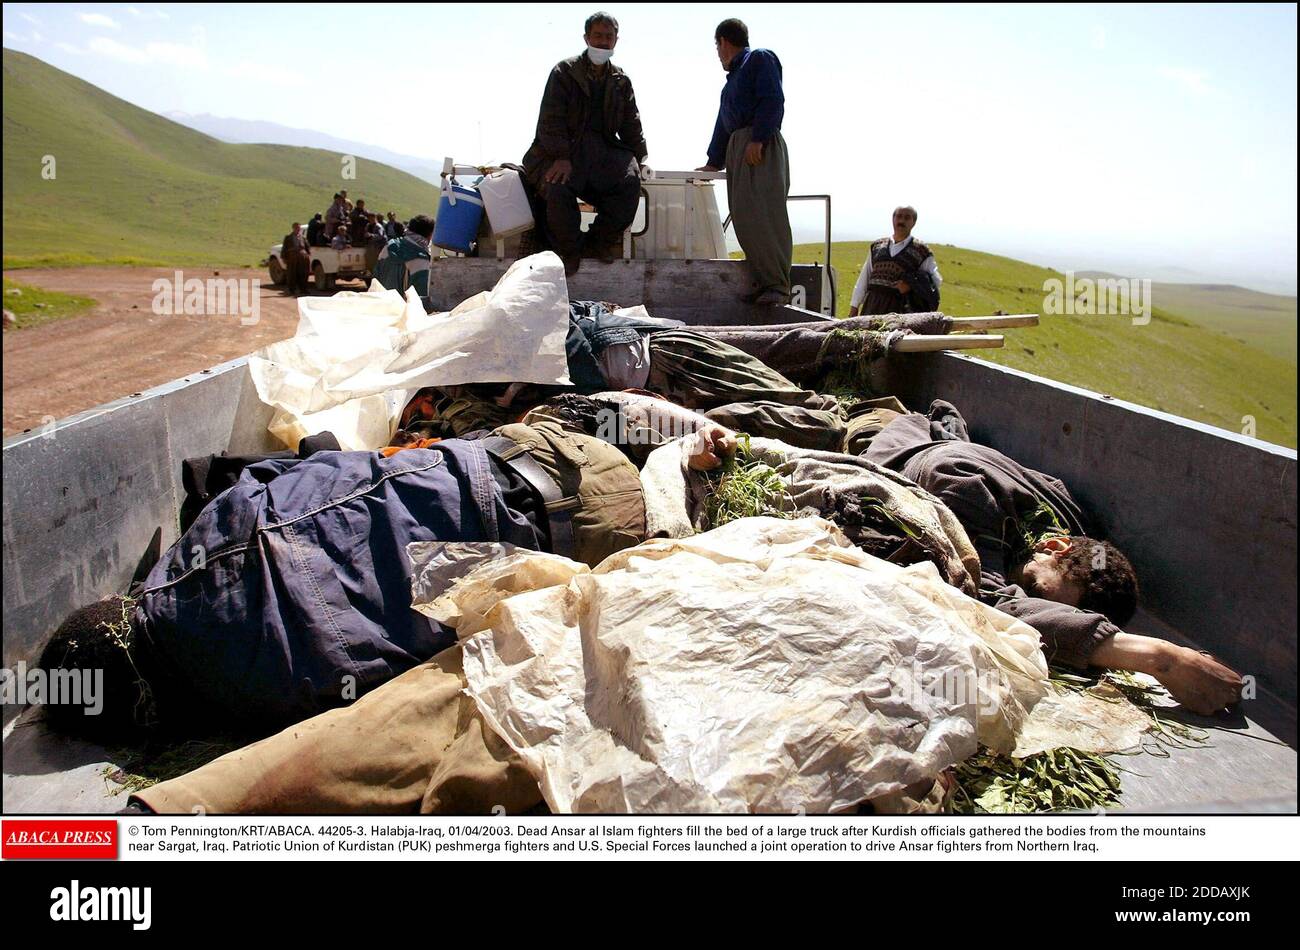 PAS DE FILM, PAS DE VIDÉO, PAS DE TV, PAS DE DOCUMENTAIRE - © TOM PENNINGTON/KRT/ABACA. 44205-3. Halabja-Iraq, 01/04/2003. Les combattants Ansar al Islam morts remplissent le lit d'un grand camion après que les responsables kurdes ont rassemblé les corps des montagnes près de Sargat, en Irak. Union patriotique du Kurdistan (PUK) peshmerga fighte Banque D'Images